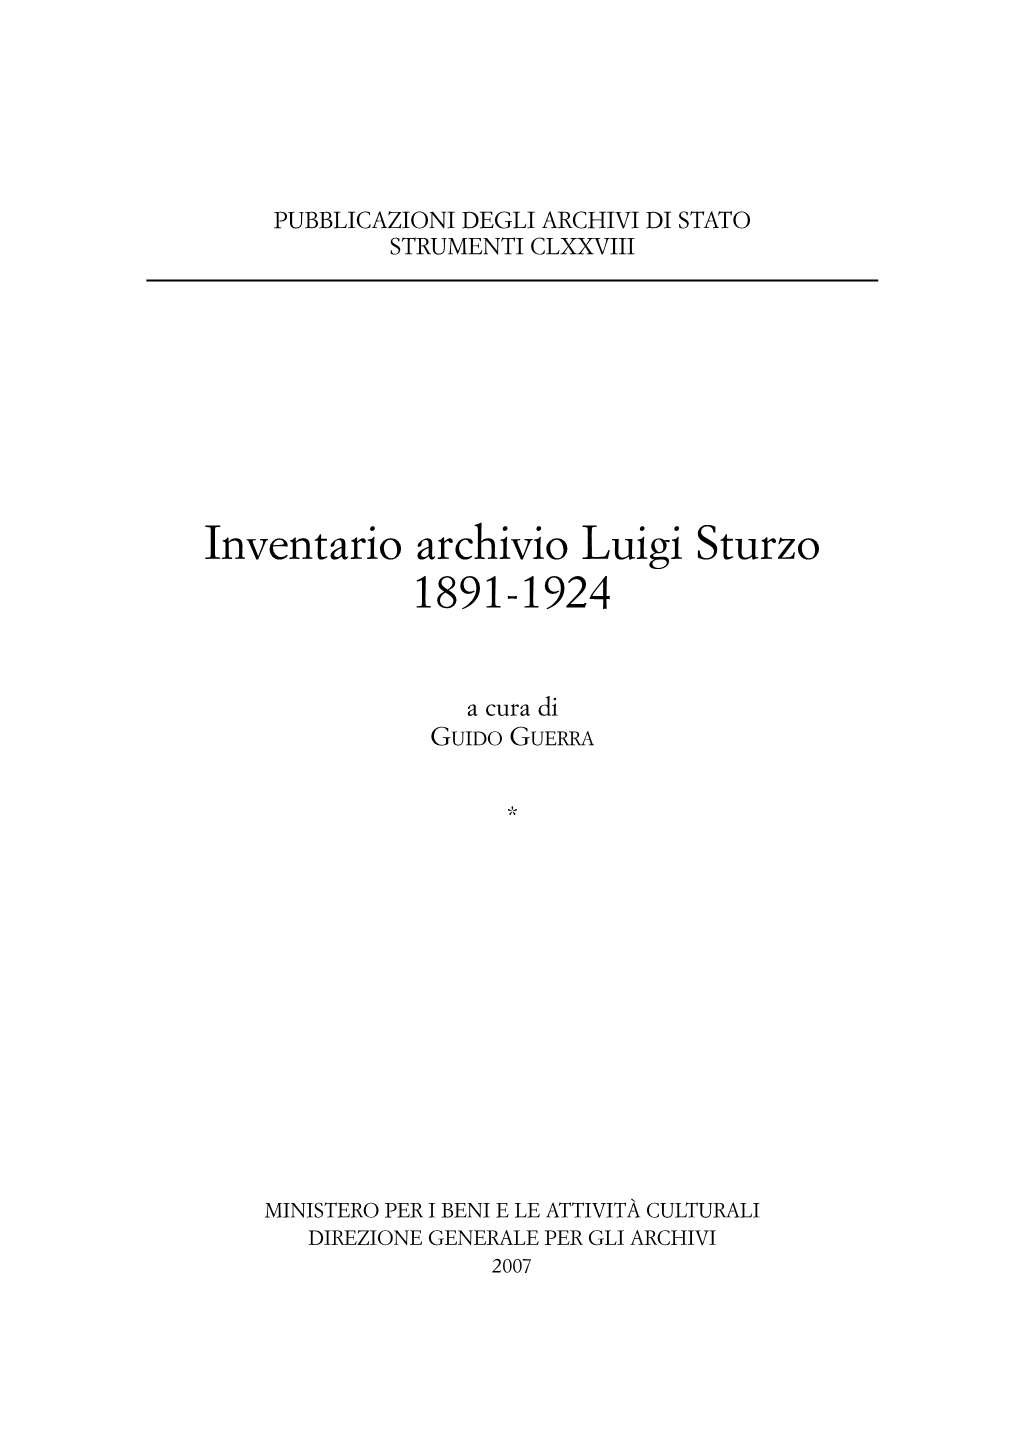 Inventario Archivio Luigi Sturzo 1891-1924